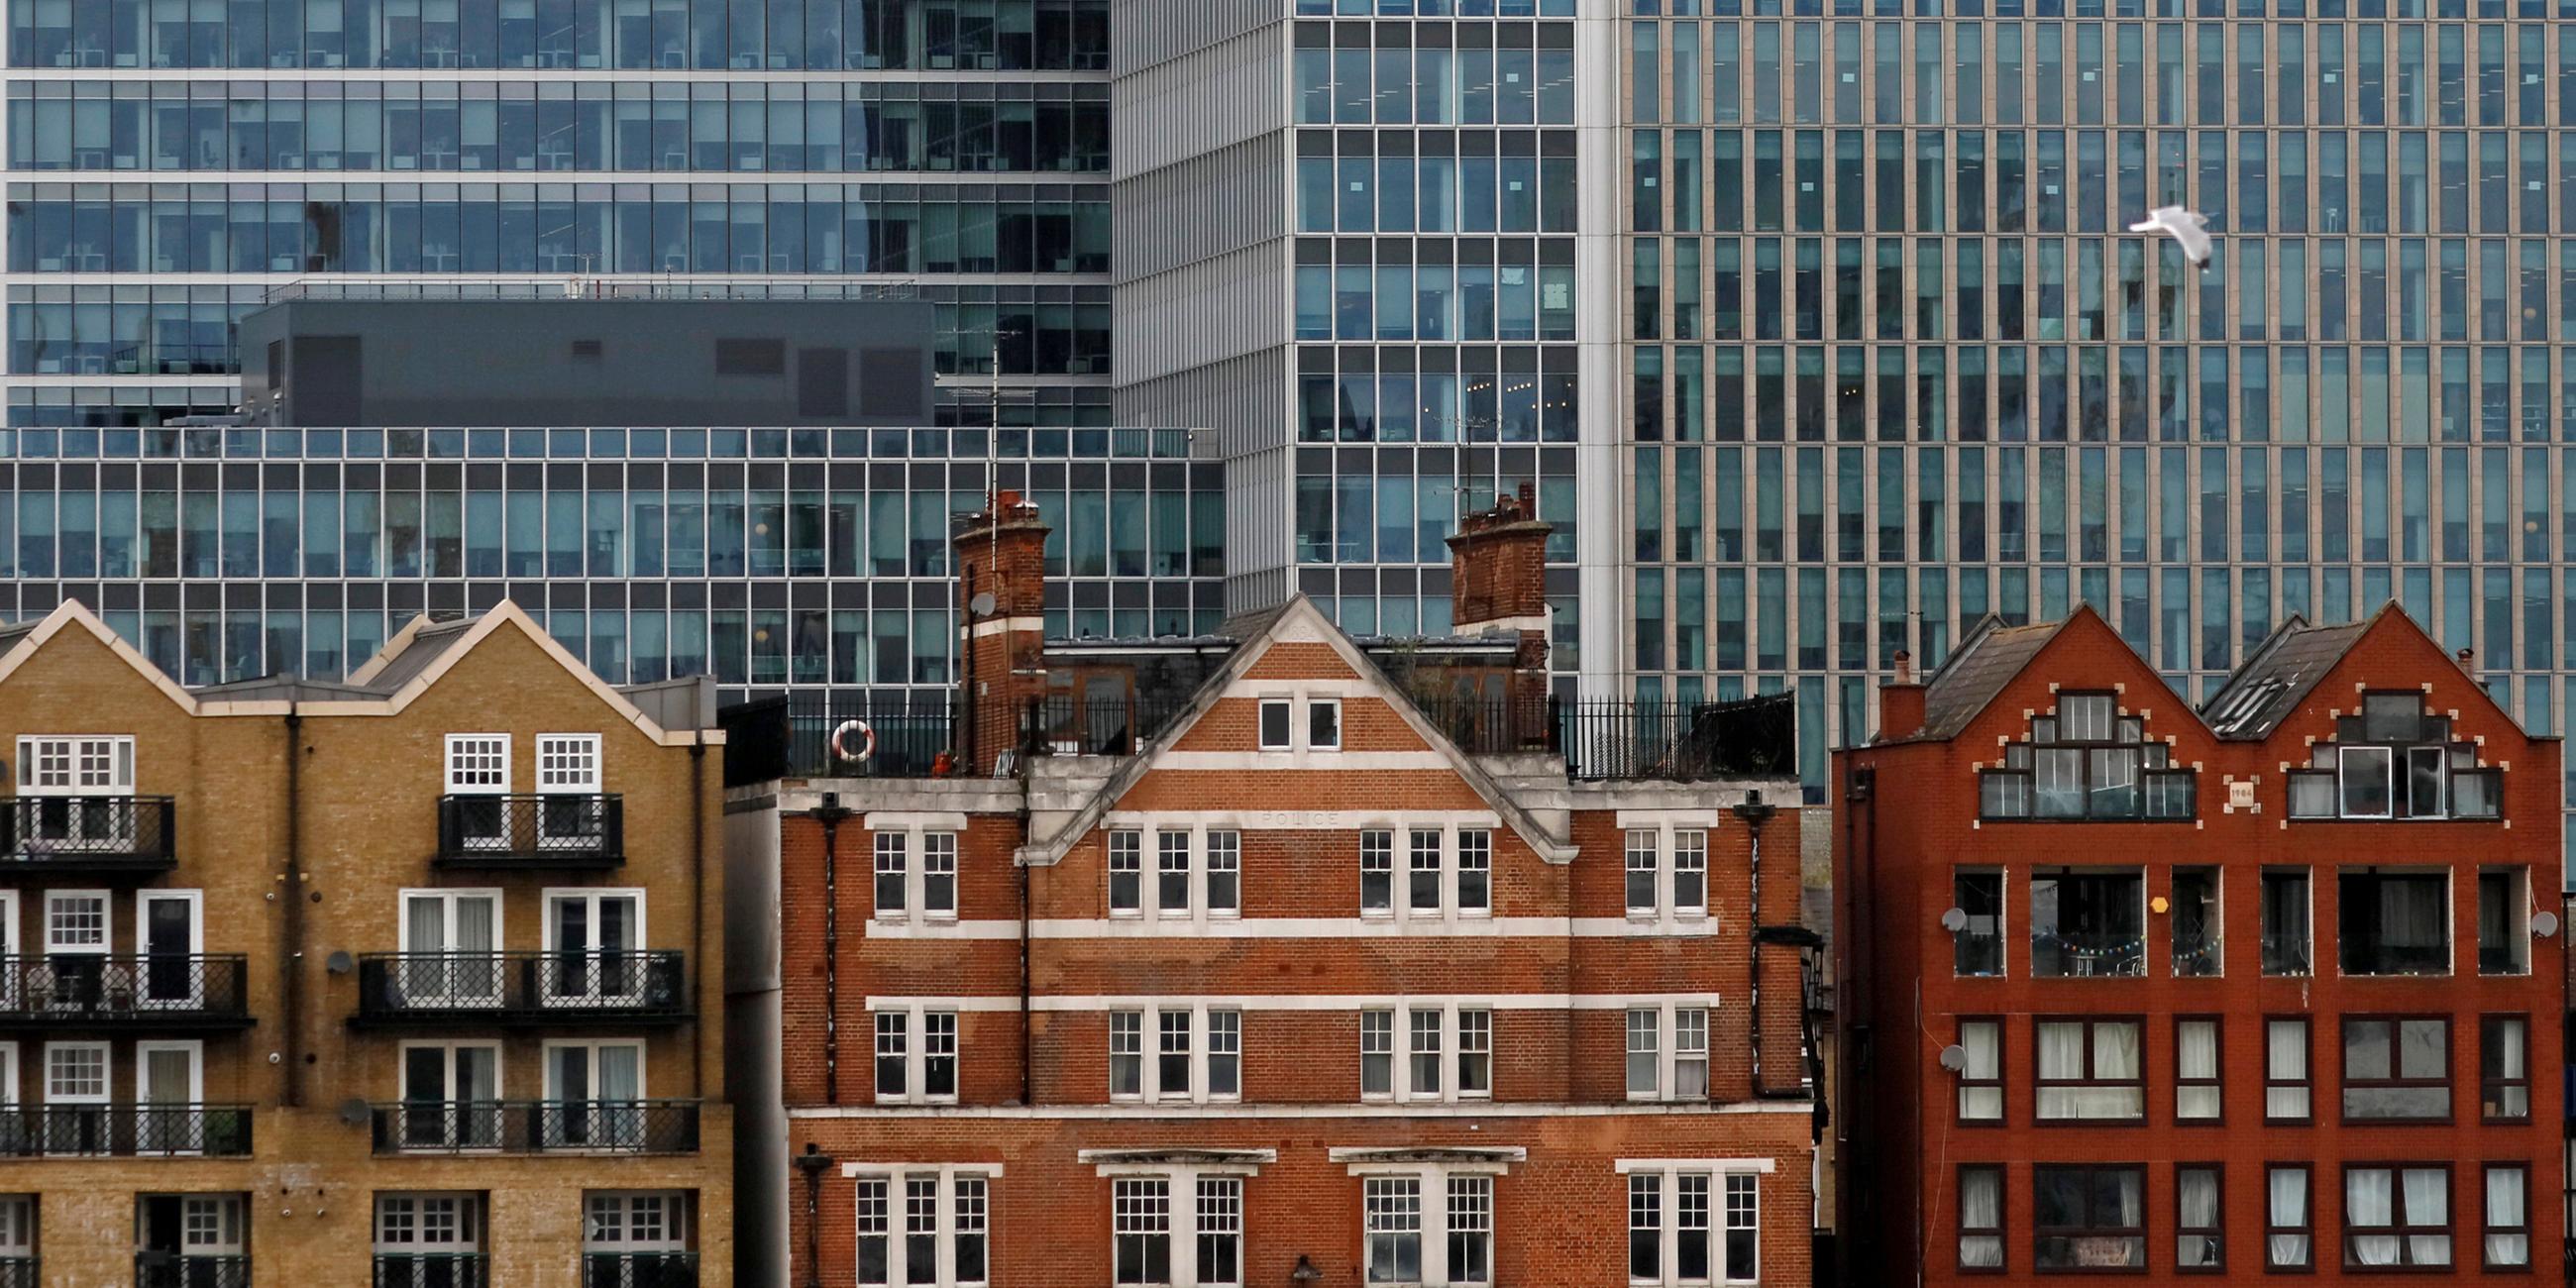 Vor dem Hintergrund von Bankhochhäusern in Canary Wharf in London, Großbritannien, 30. Oktober 2015, stehen Wohnhäuser.